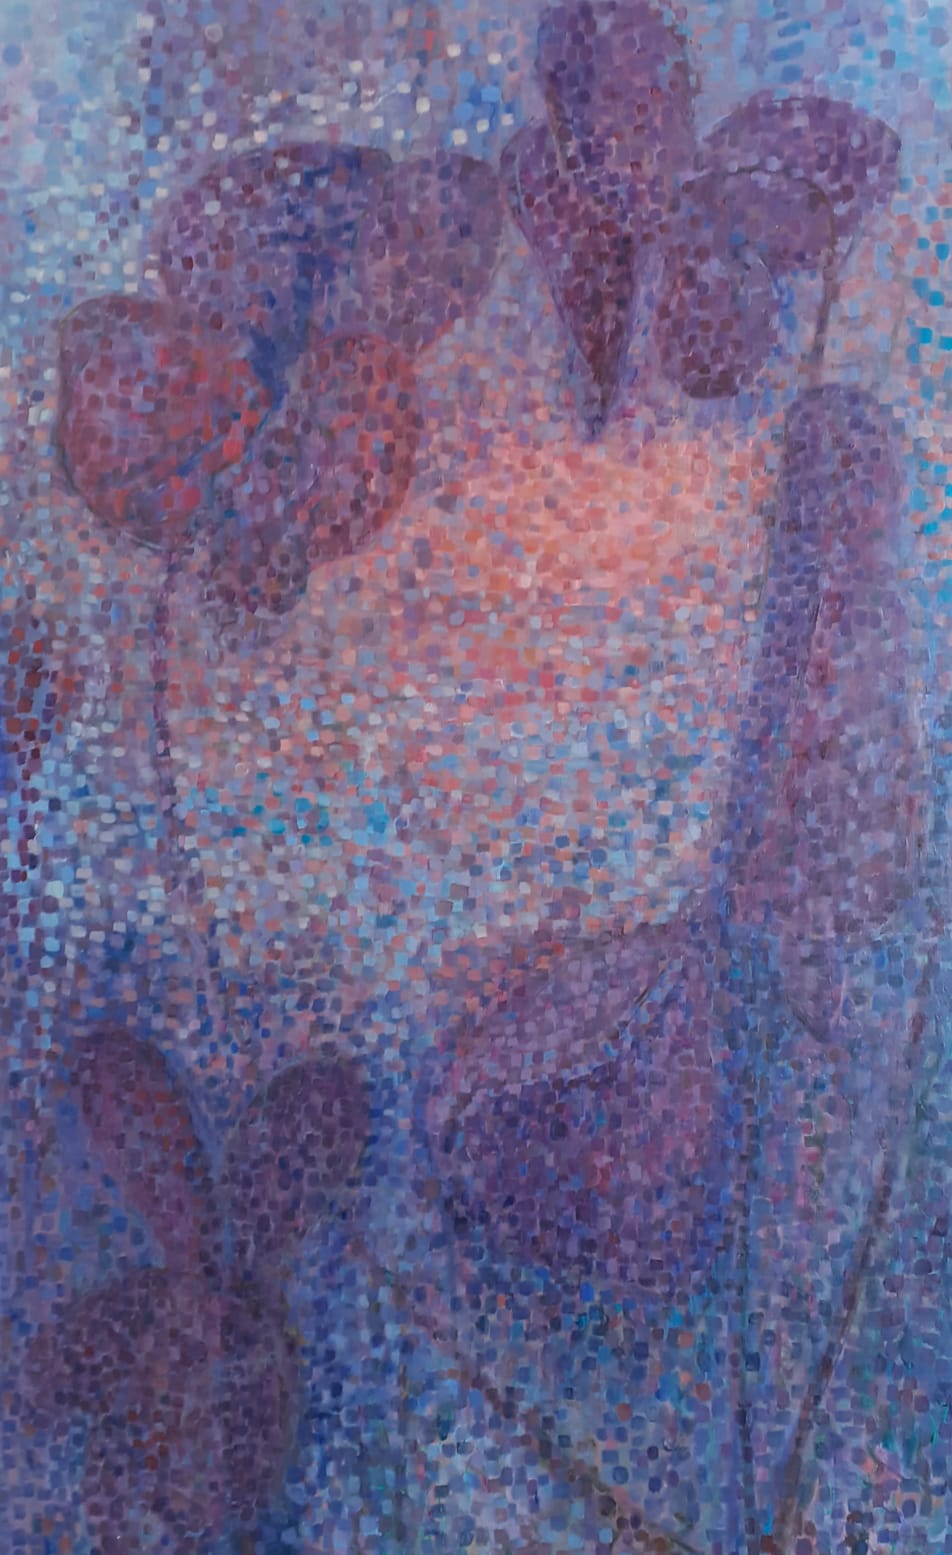 Violetti mosaiikkimaisista pienistä täplistä koostuva maalaus.